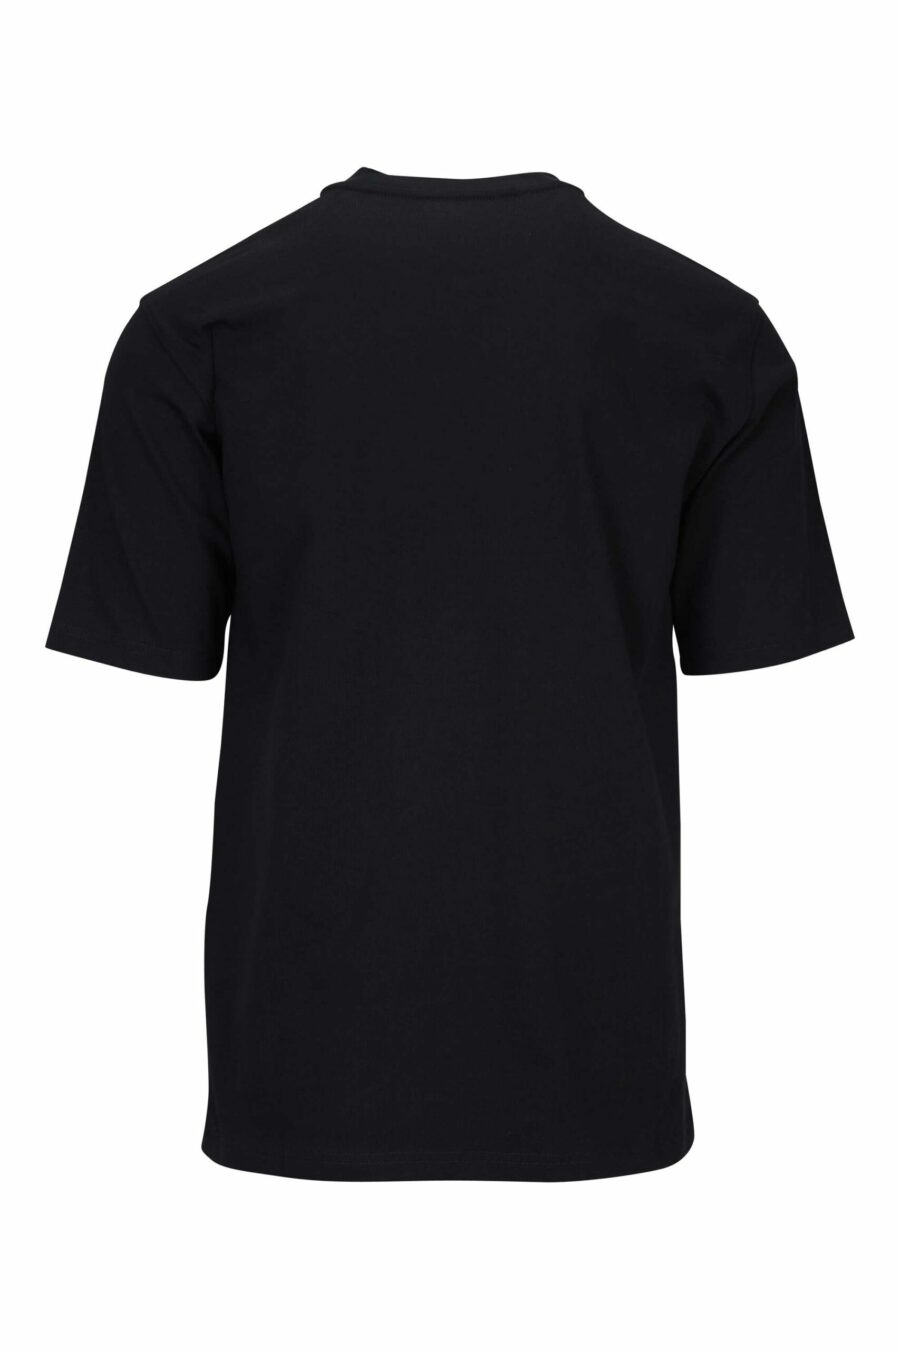 Mistura de t-shirt preta com bolso monocromático e etiqueta com logótipo - 667113452036 2 scaled